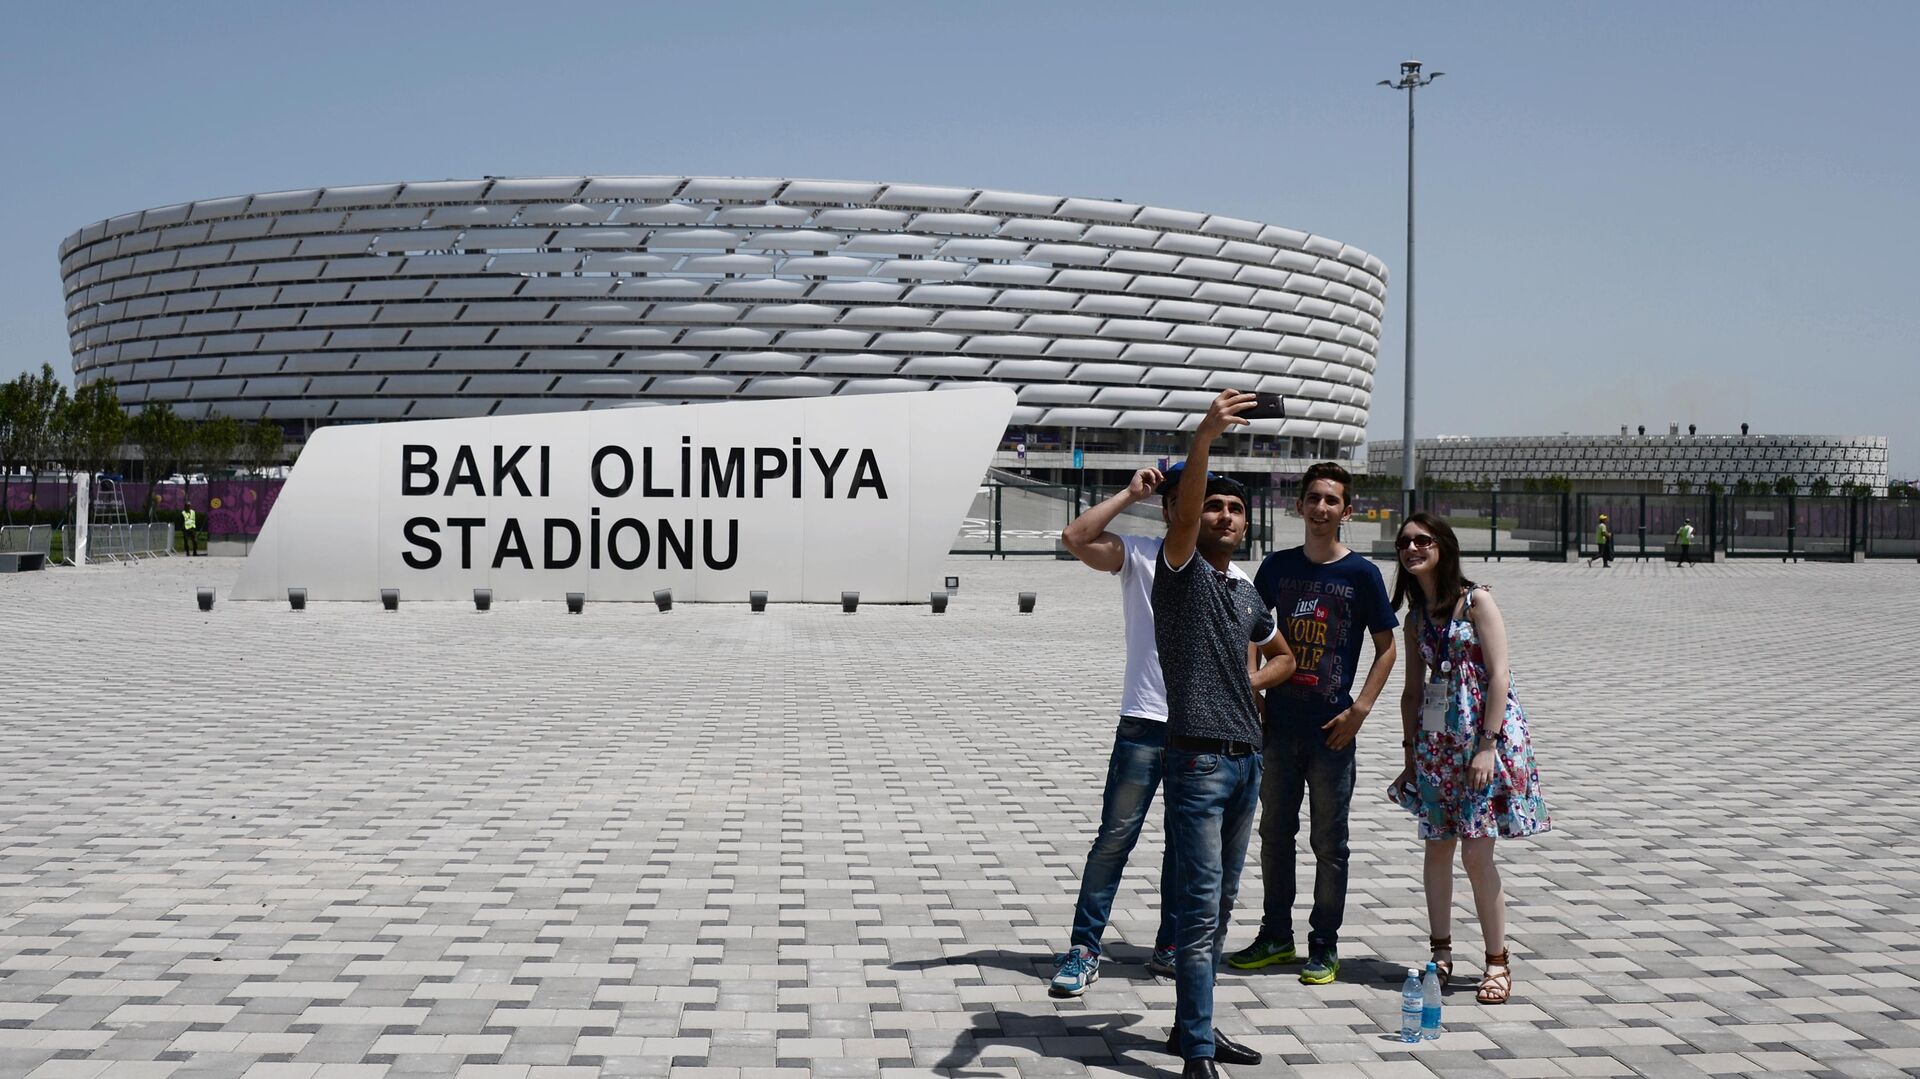 Олимпийский стадион в Баку - РИА Новости, 1920, 08.04.2021